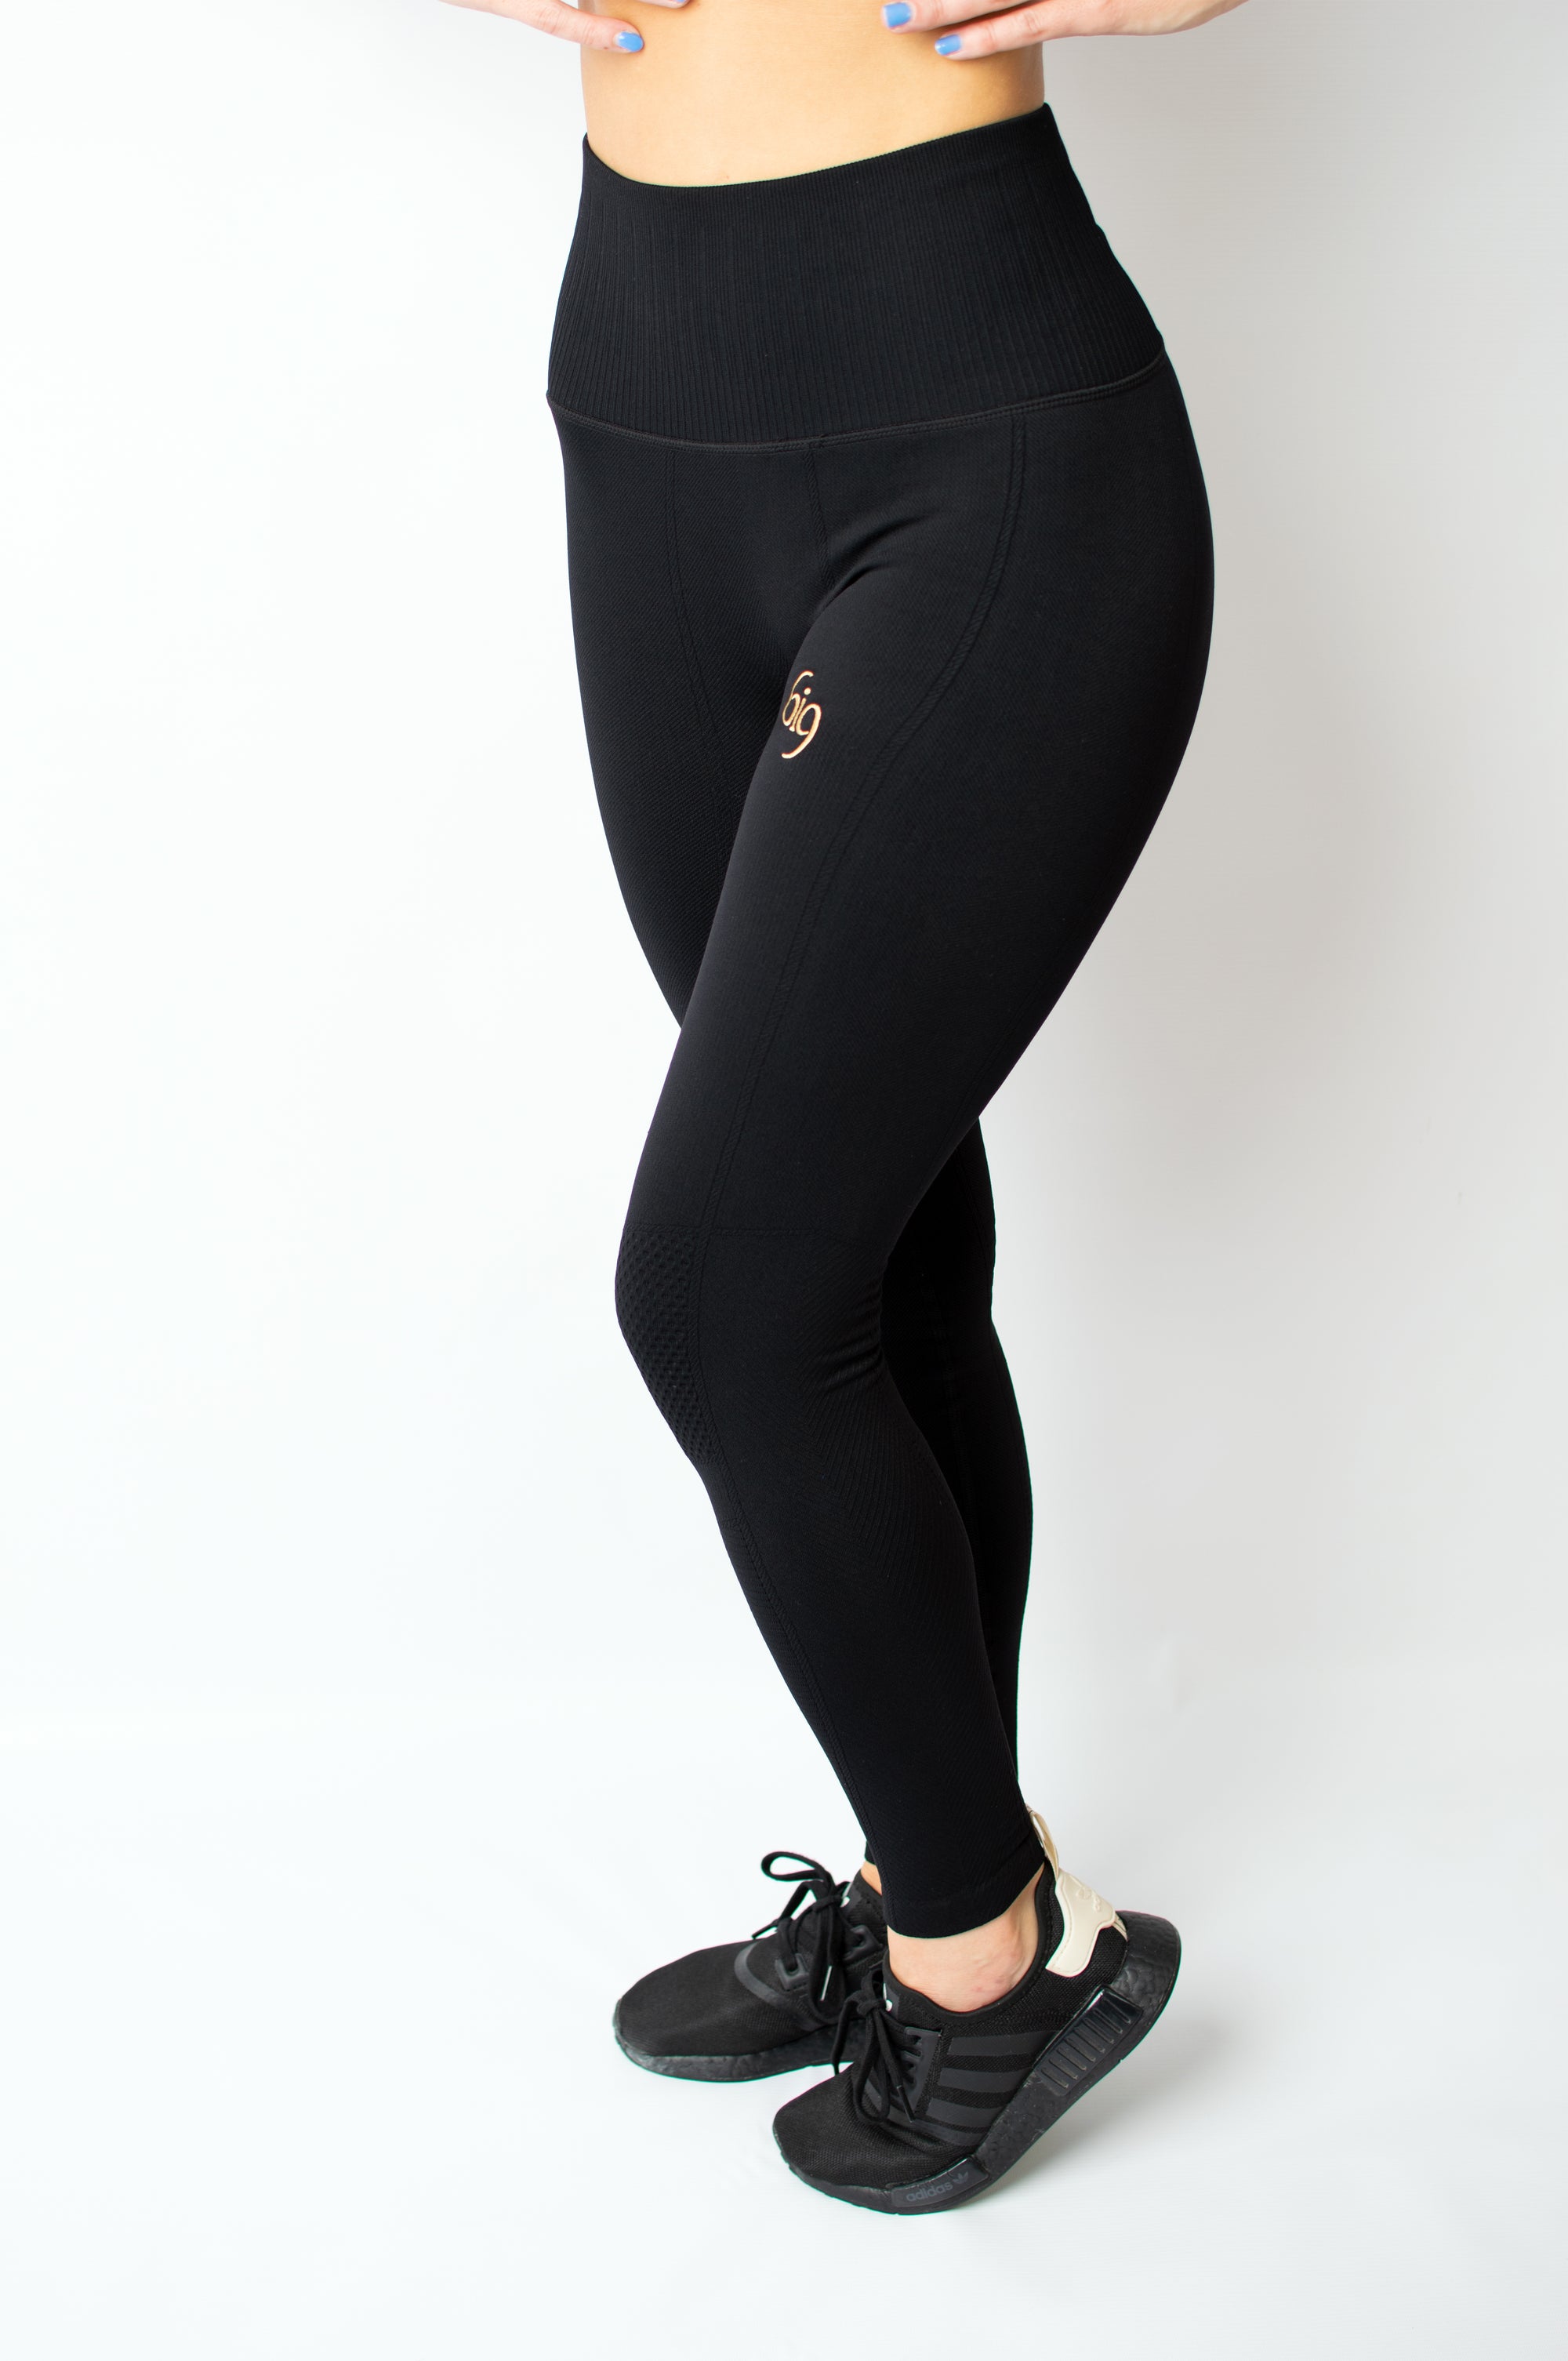 Inspire Legging Black/Gold - BIG Gymwear Ltd